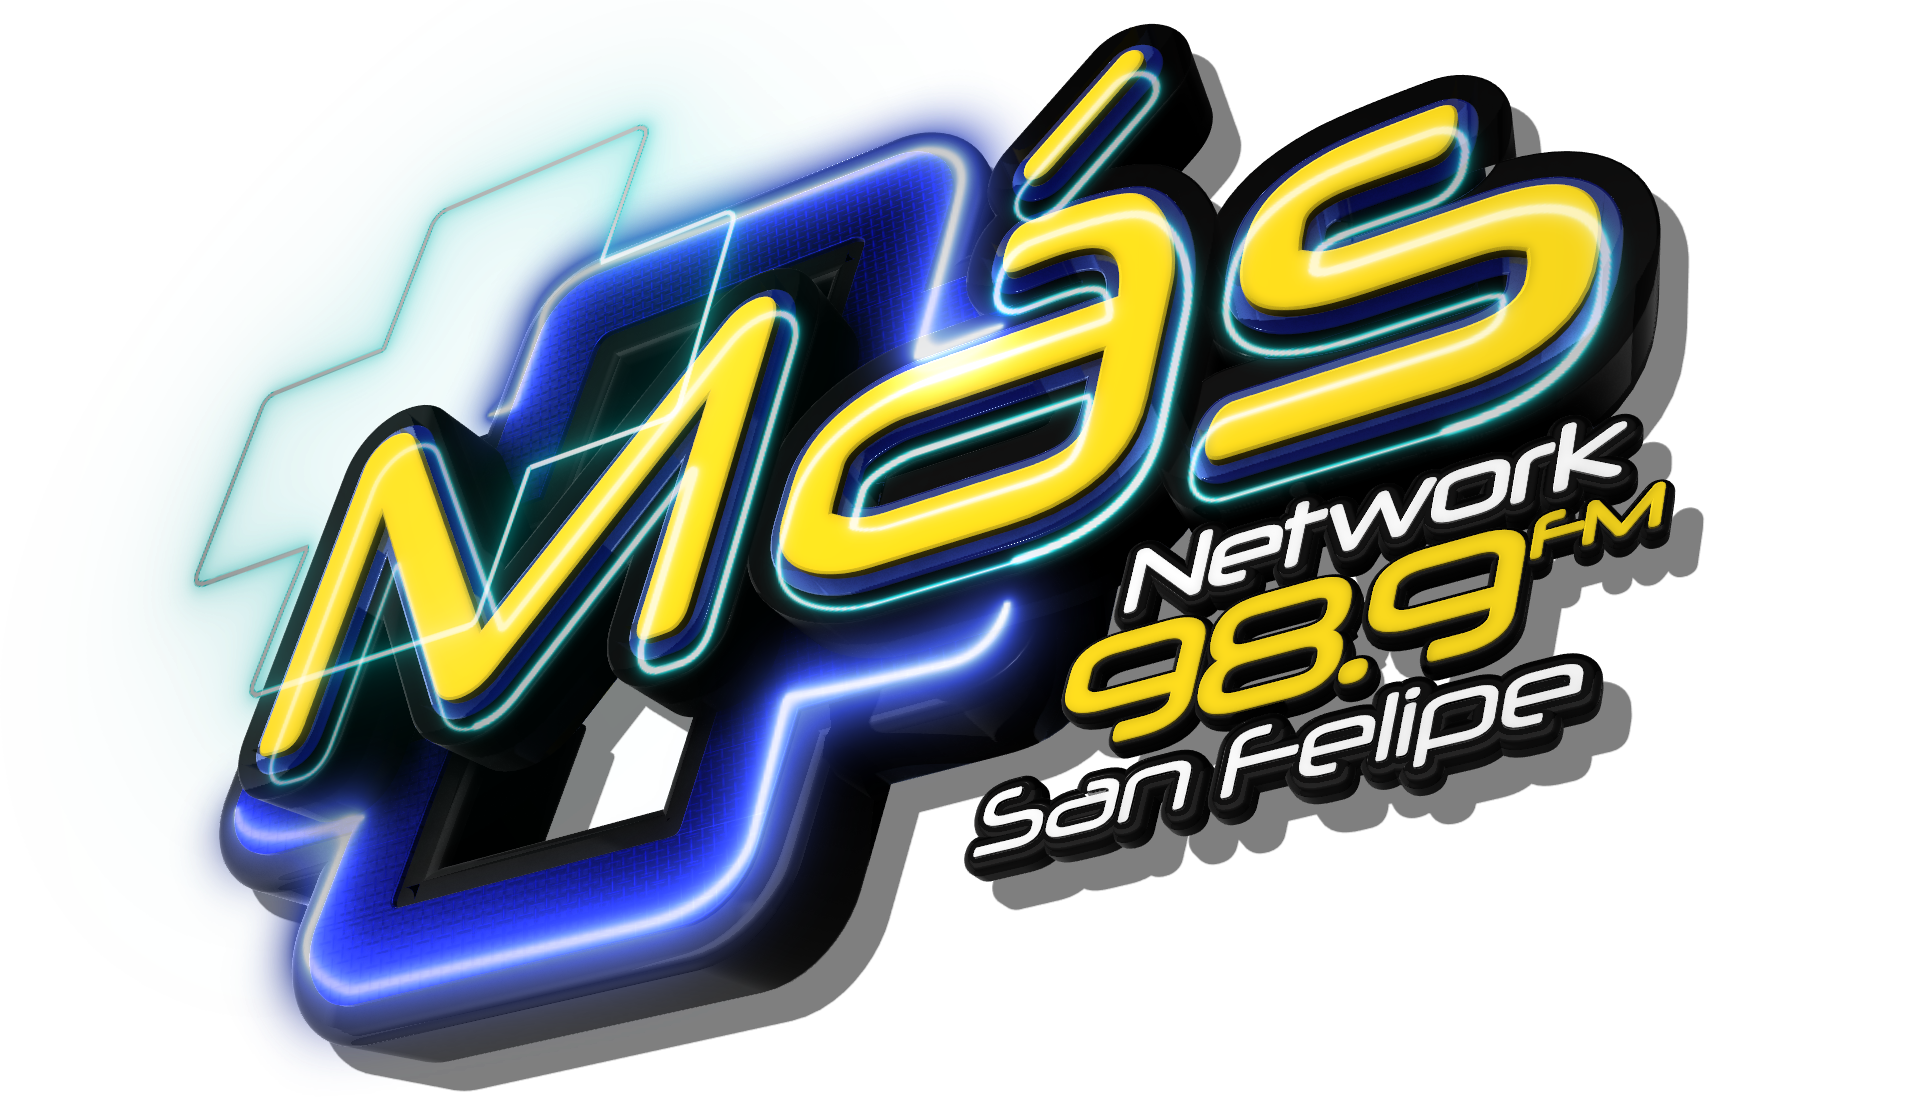 Más Network 98.9 FM – Circuito Más Network Venezuela